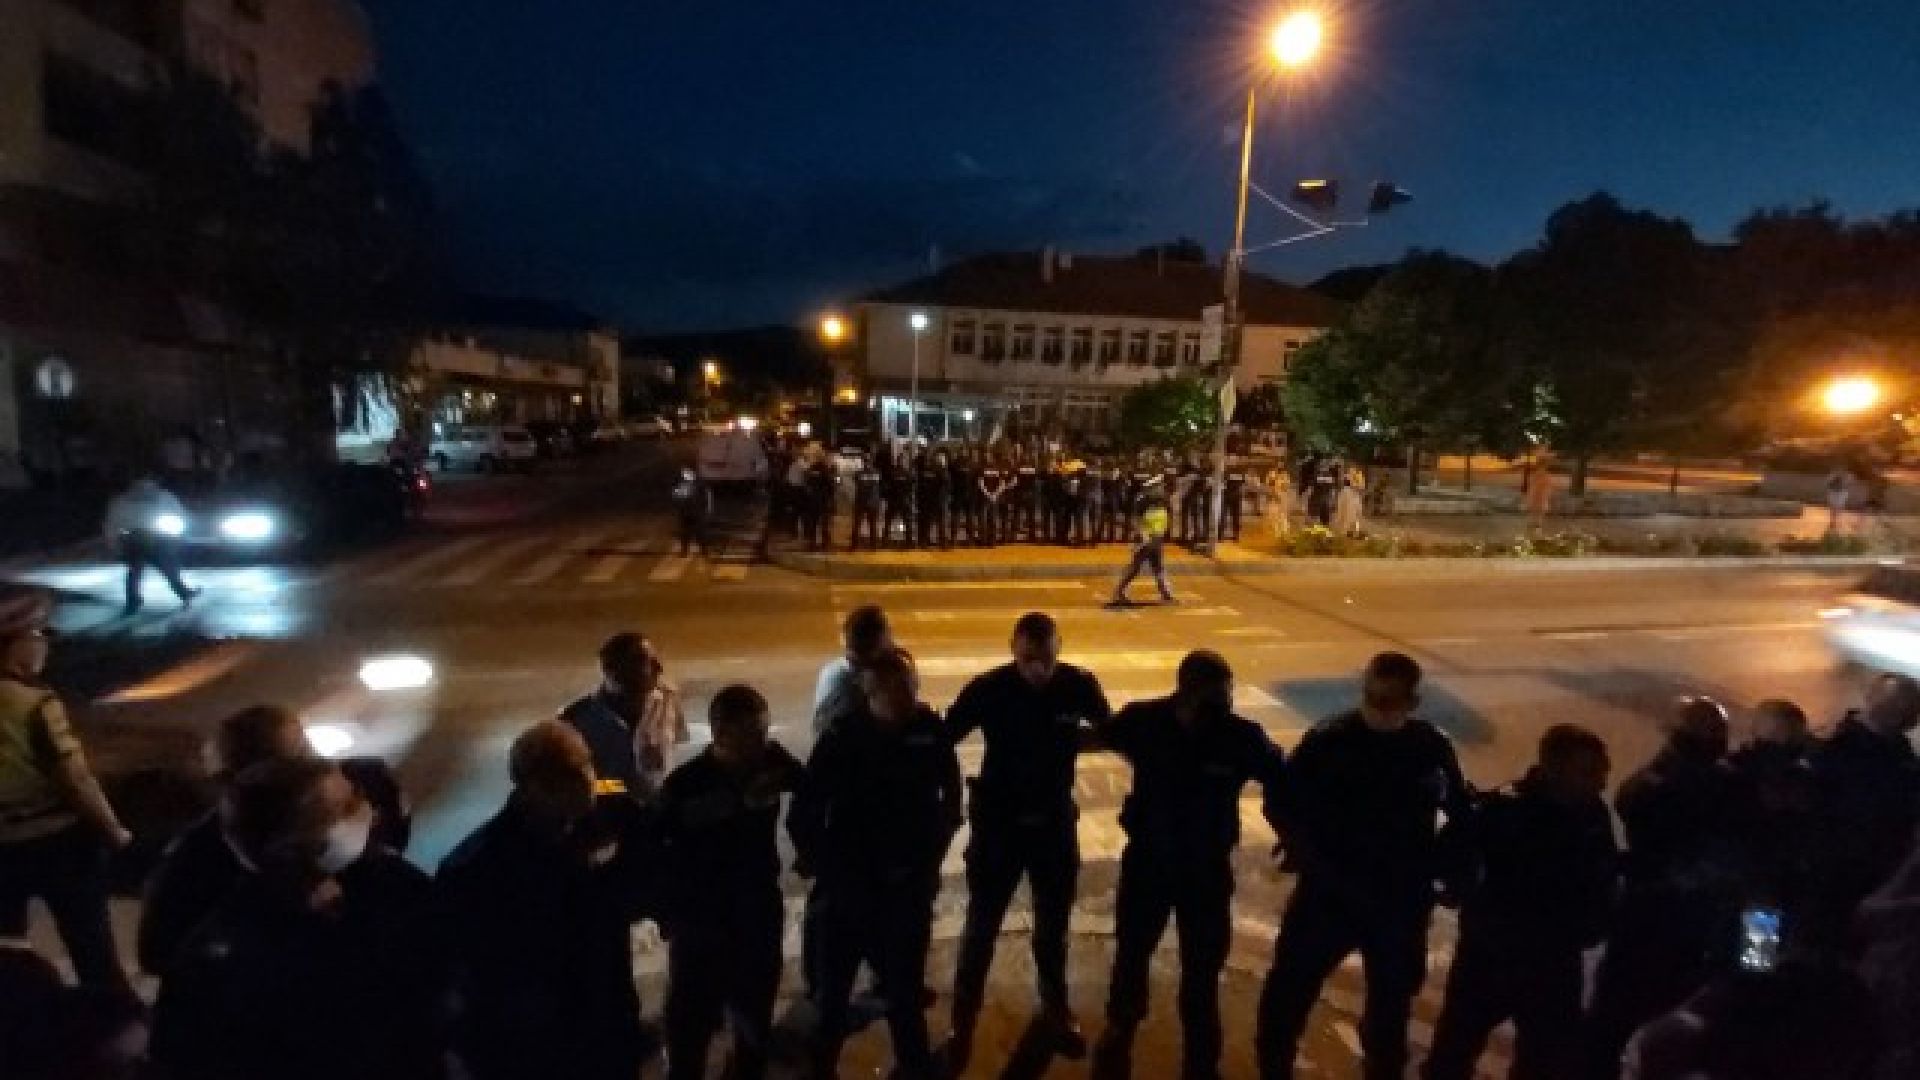 МВР-Благоевград проверява полицай, заплашил протестиращ: "Ще си имаш големи проблеми"